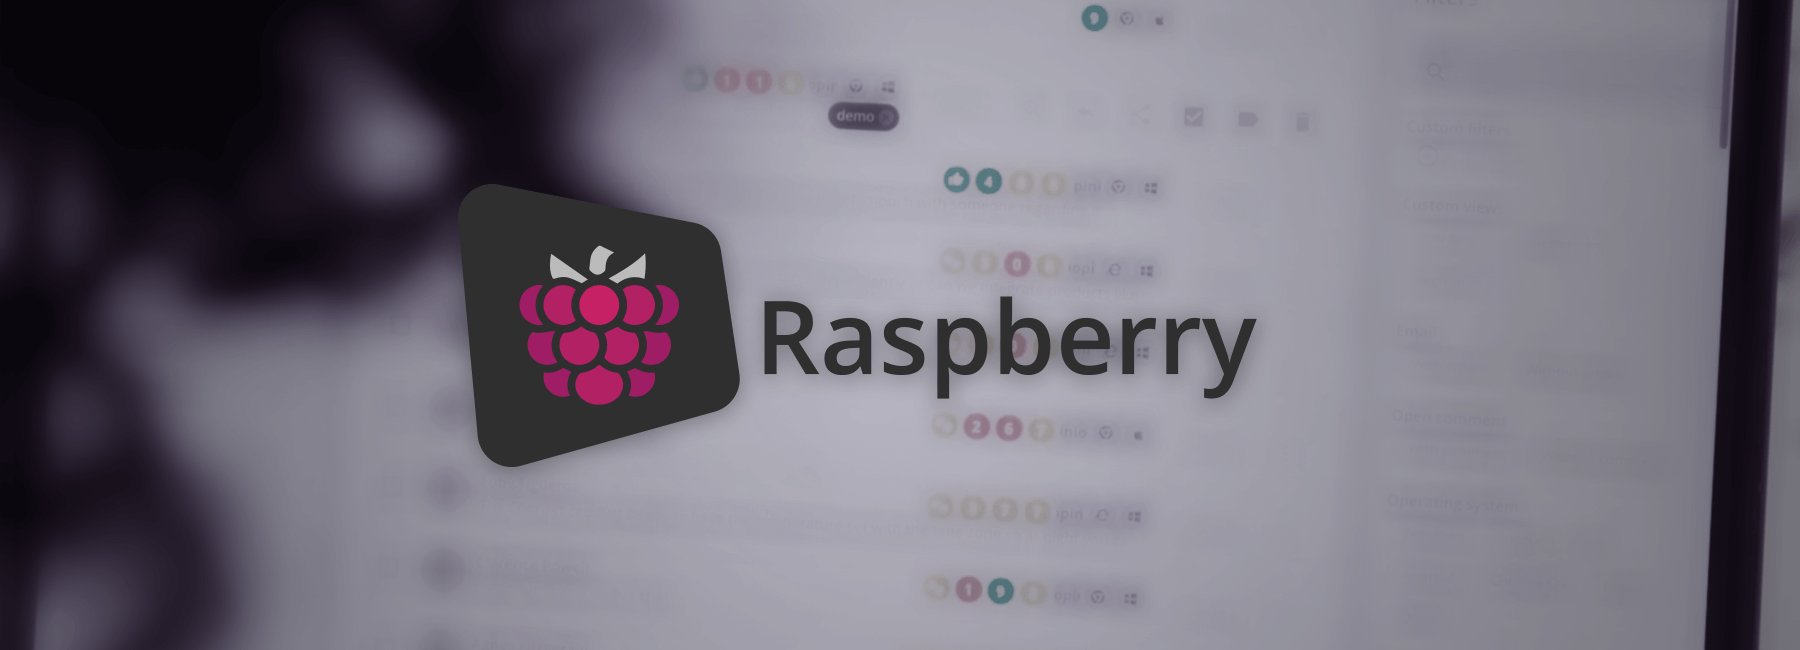 Neue Benutzeroberfläche Mopinion Raspberry verlässt die Beta-Phase